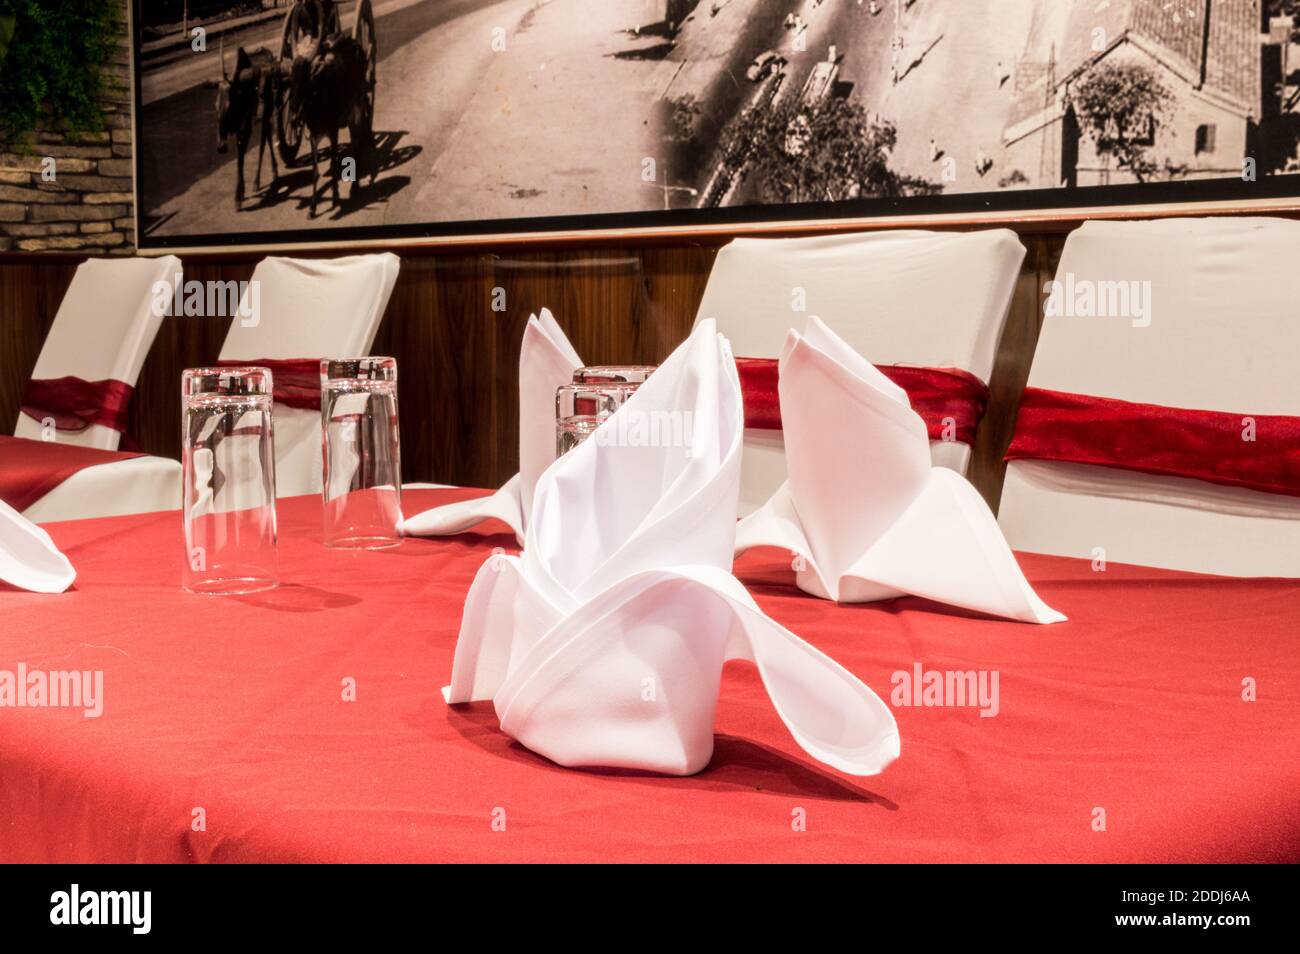 Esstisch mit Wasserglas und weißer Serviette Stockfoto